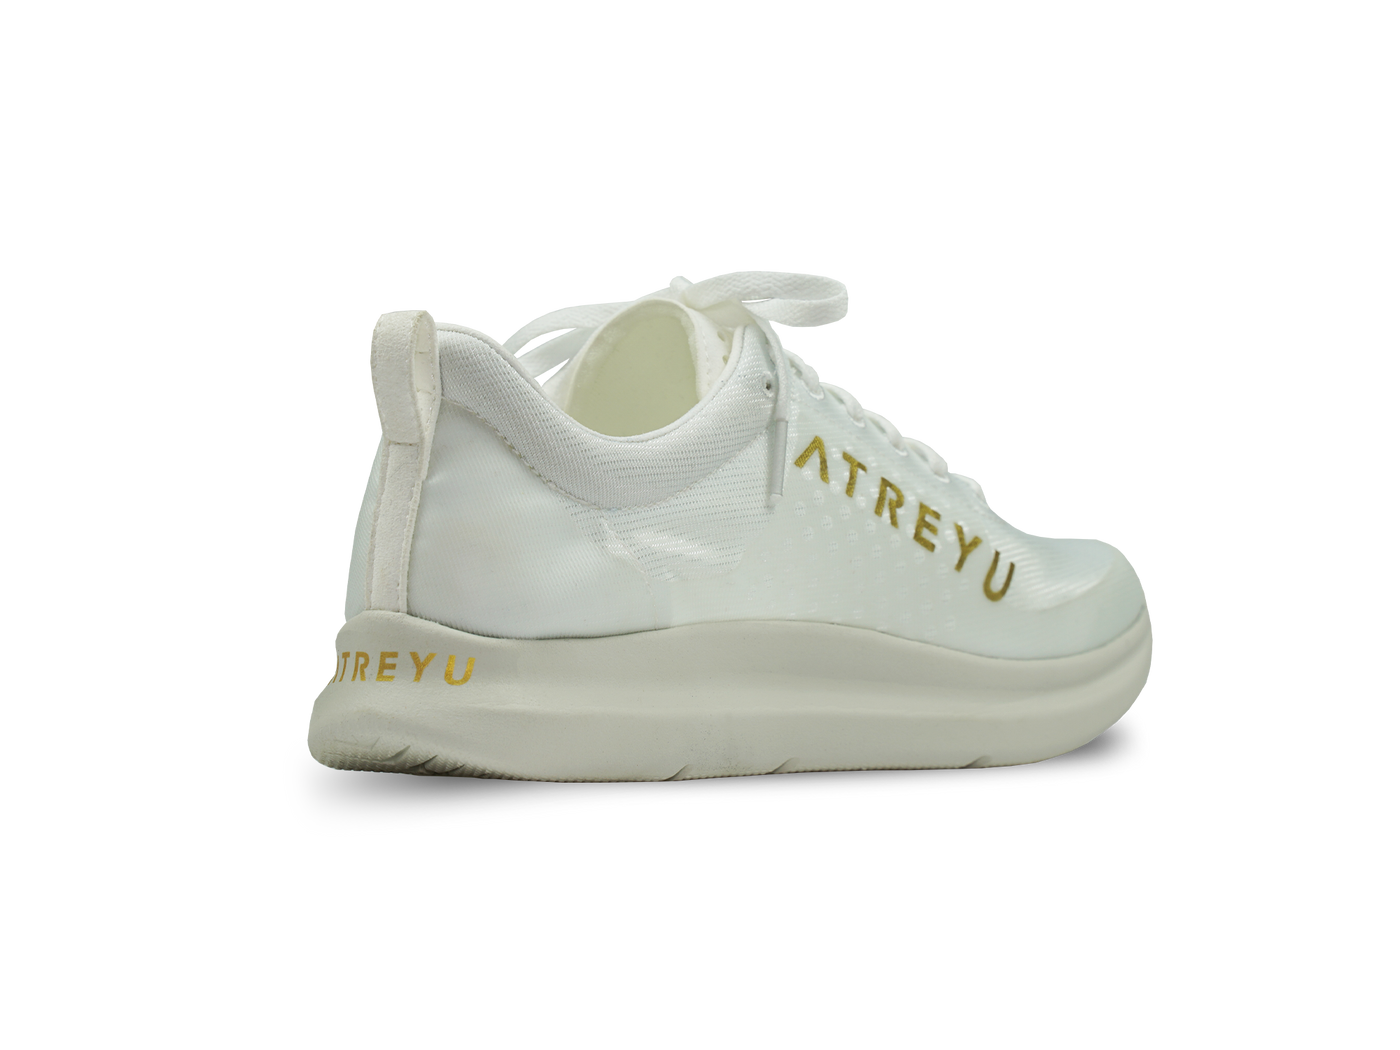 Atreyu Base Model - Lightweight running shoes back angle white